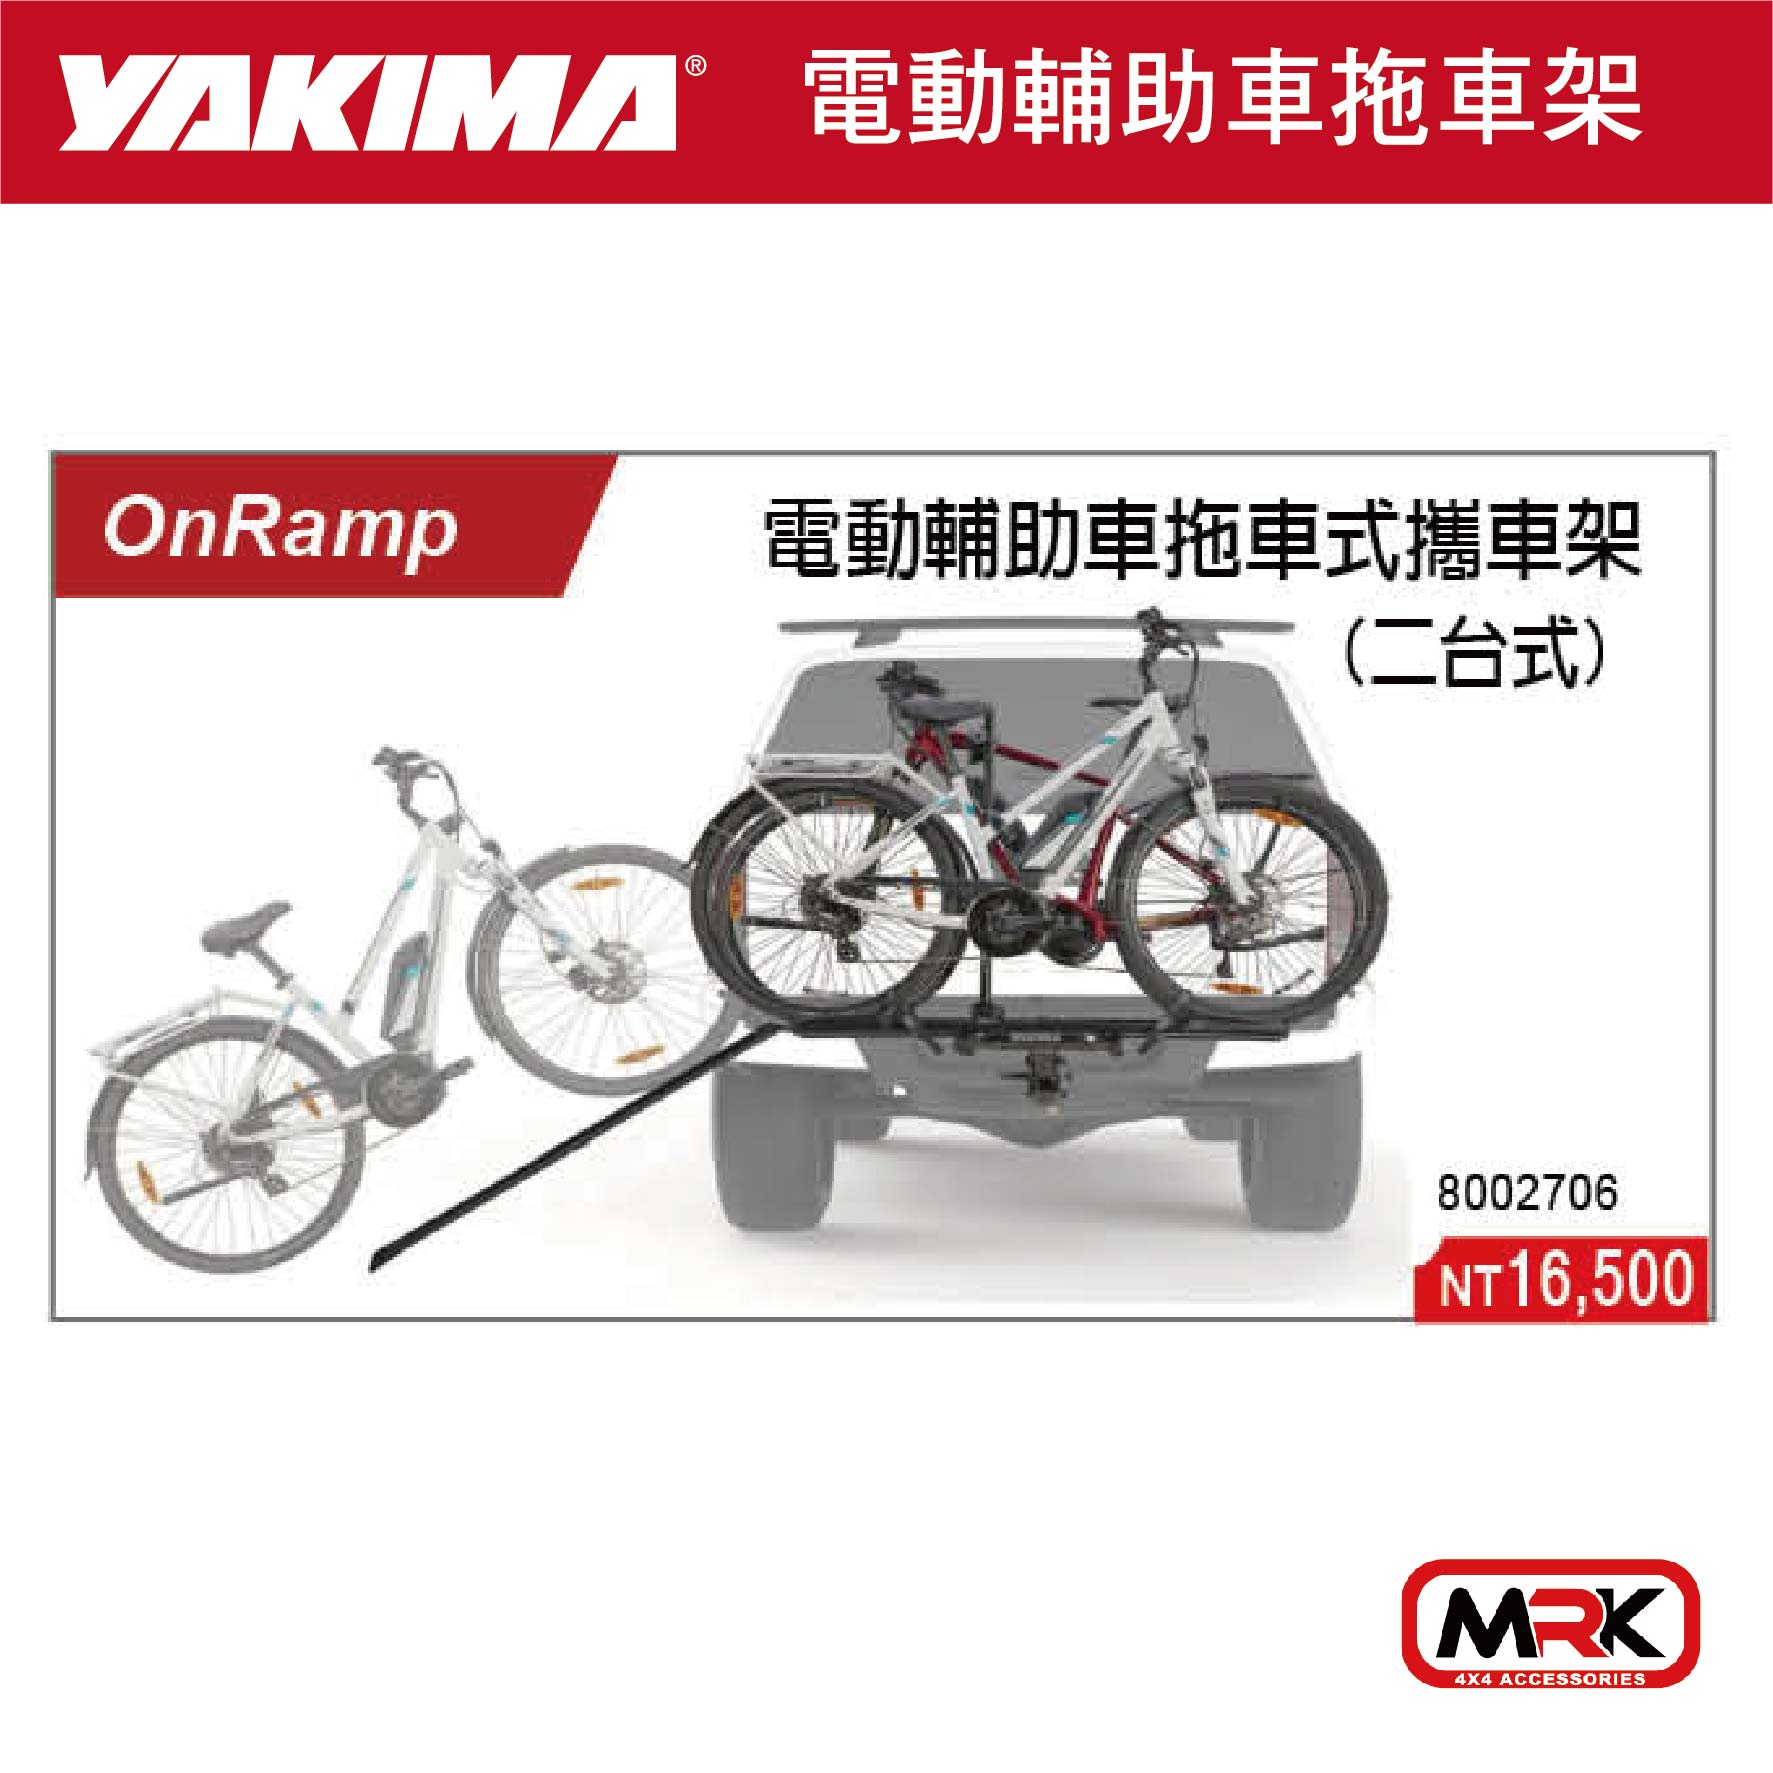 【MRK】YAKIMA ONRAMP 電動輔助車拖車式攜車架 自行車攜車架 2車 2706 8002706